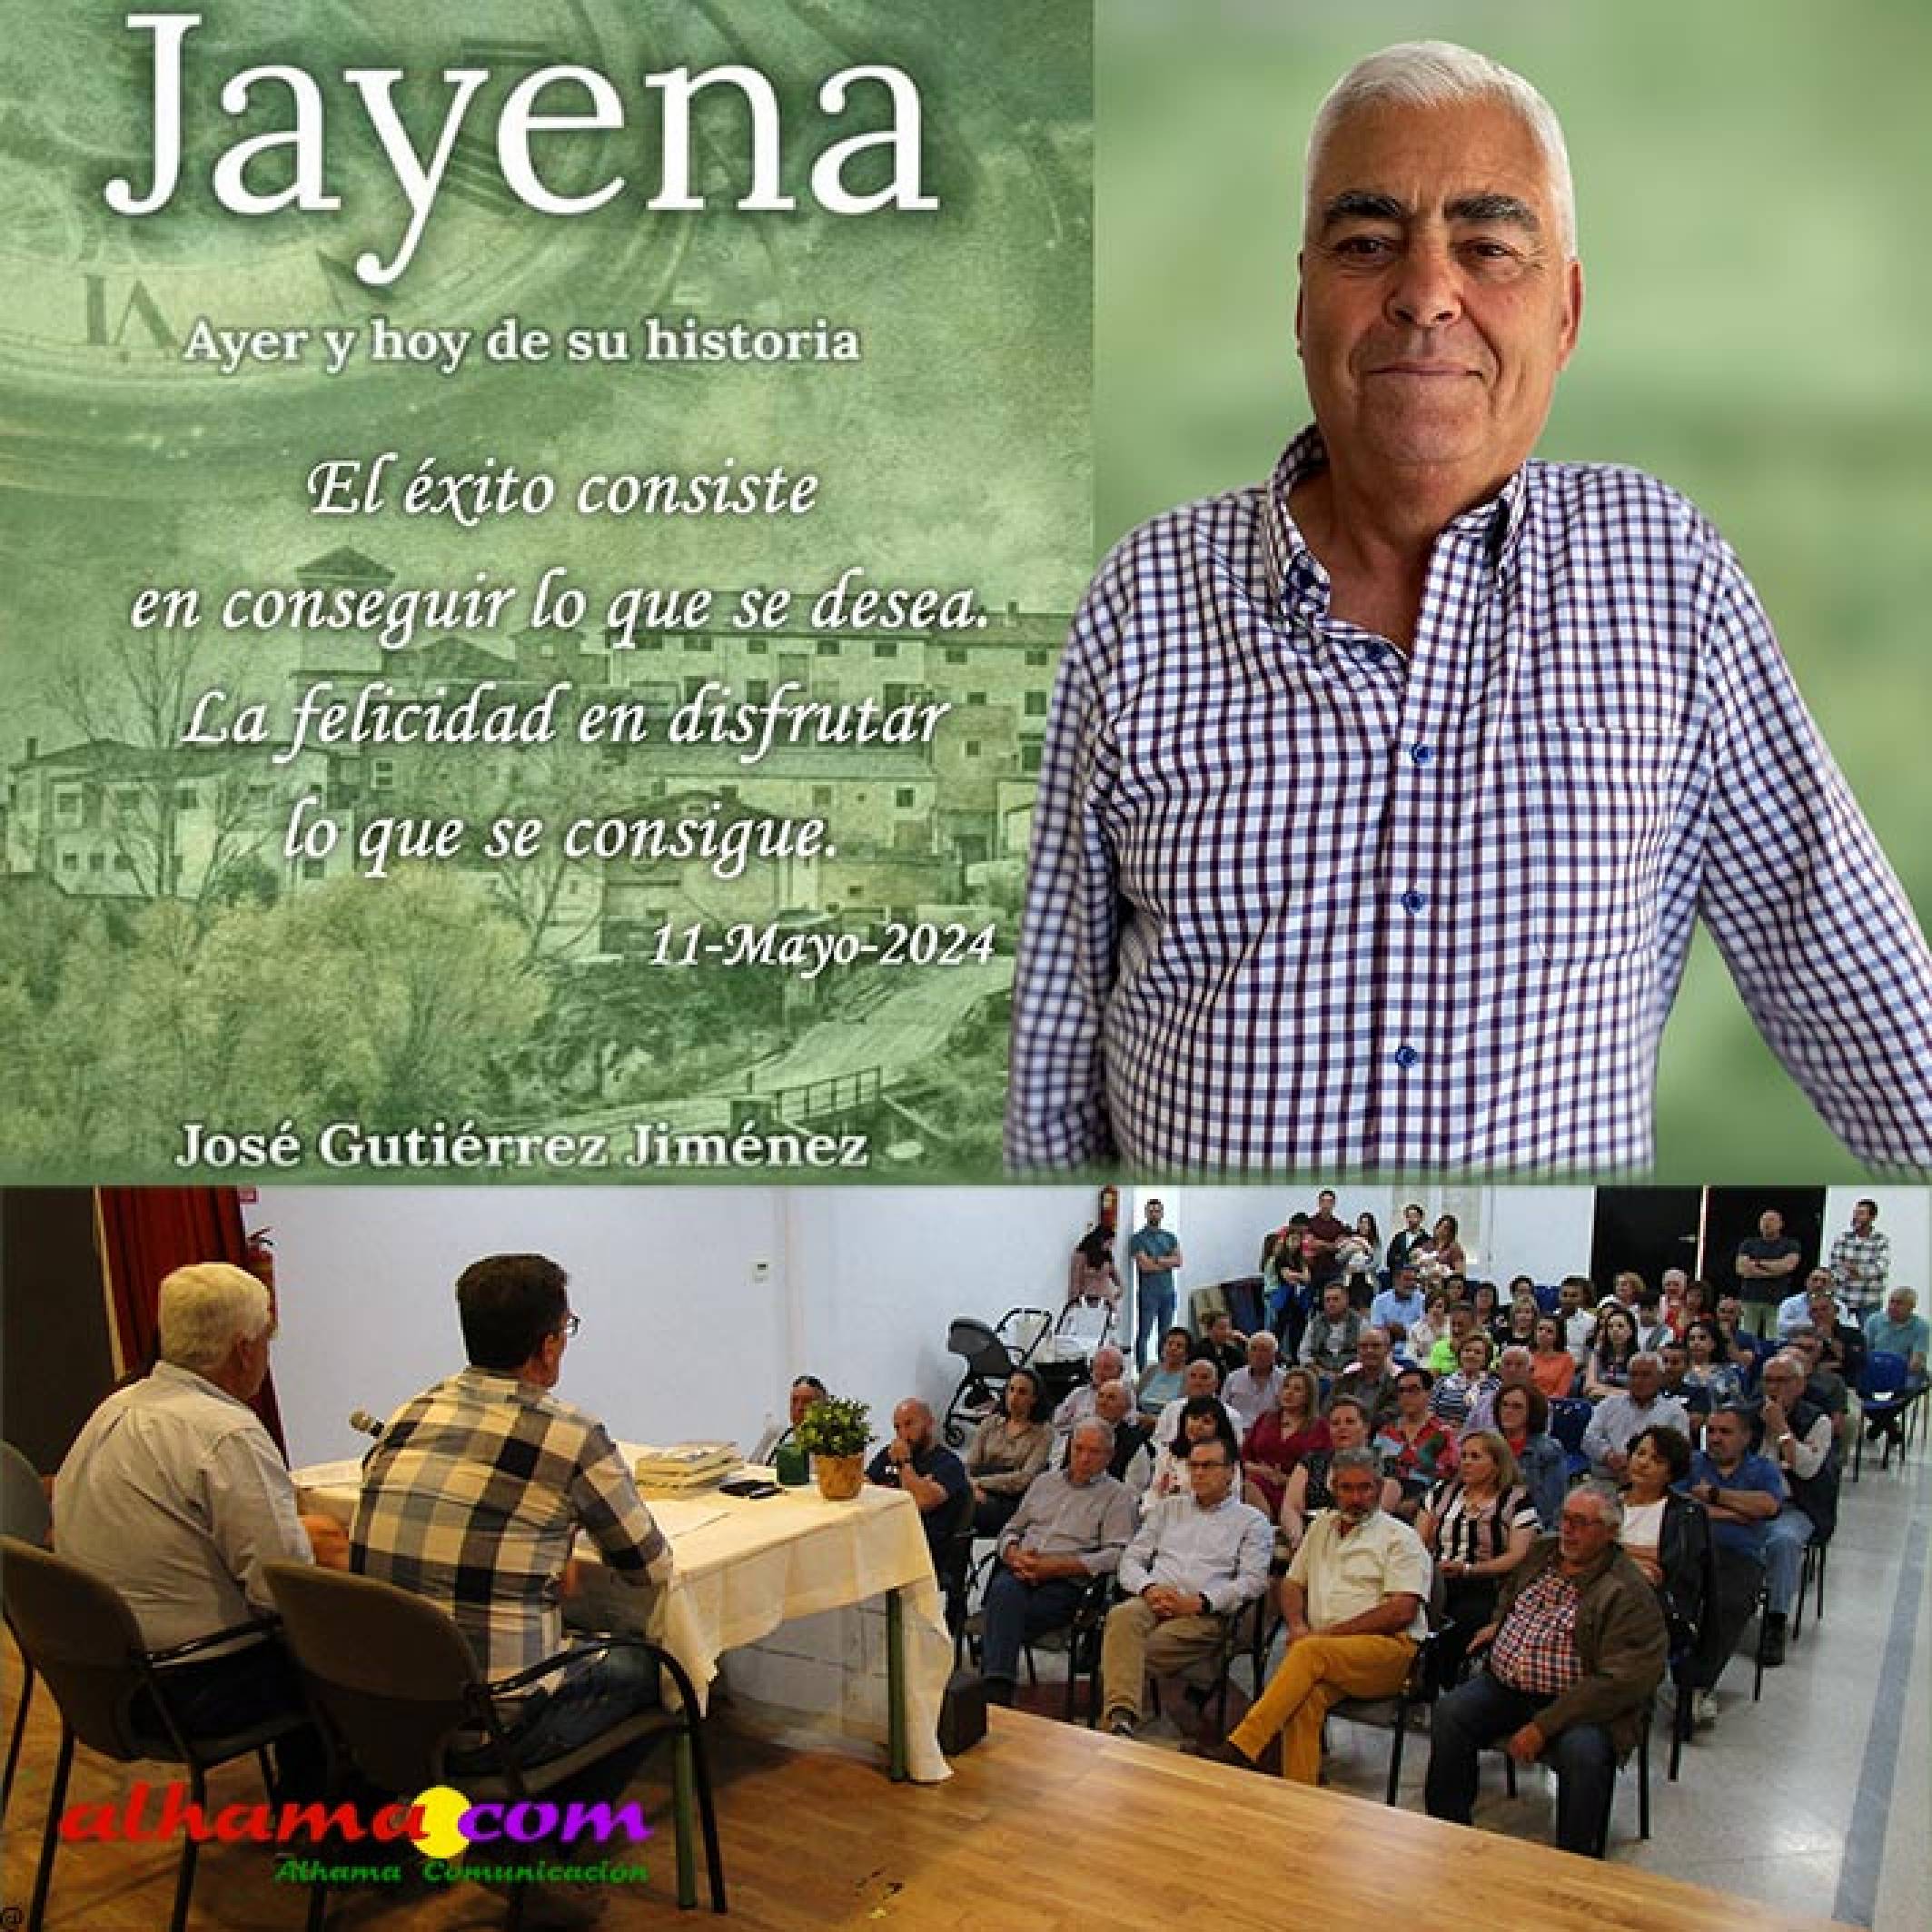 Buena acogida en Jayena para el nuevo libro de José Gutiérrez Jiménez